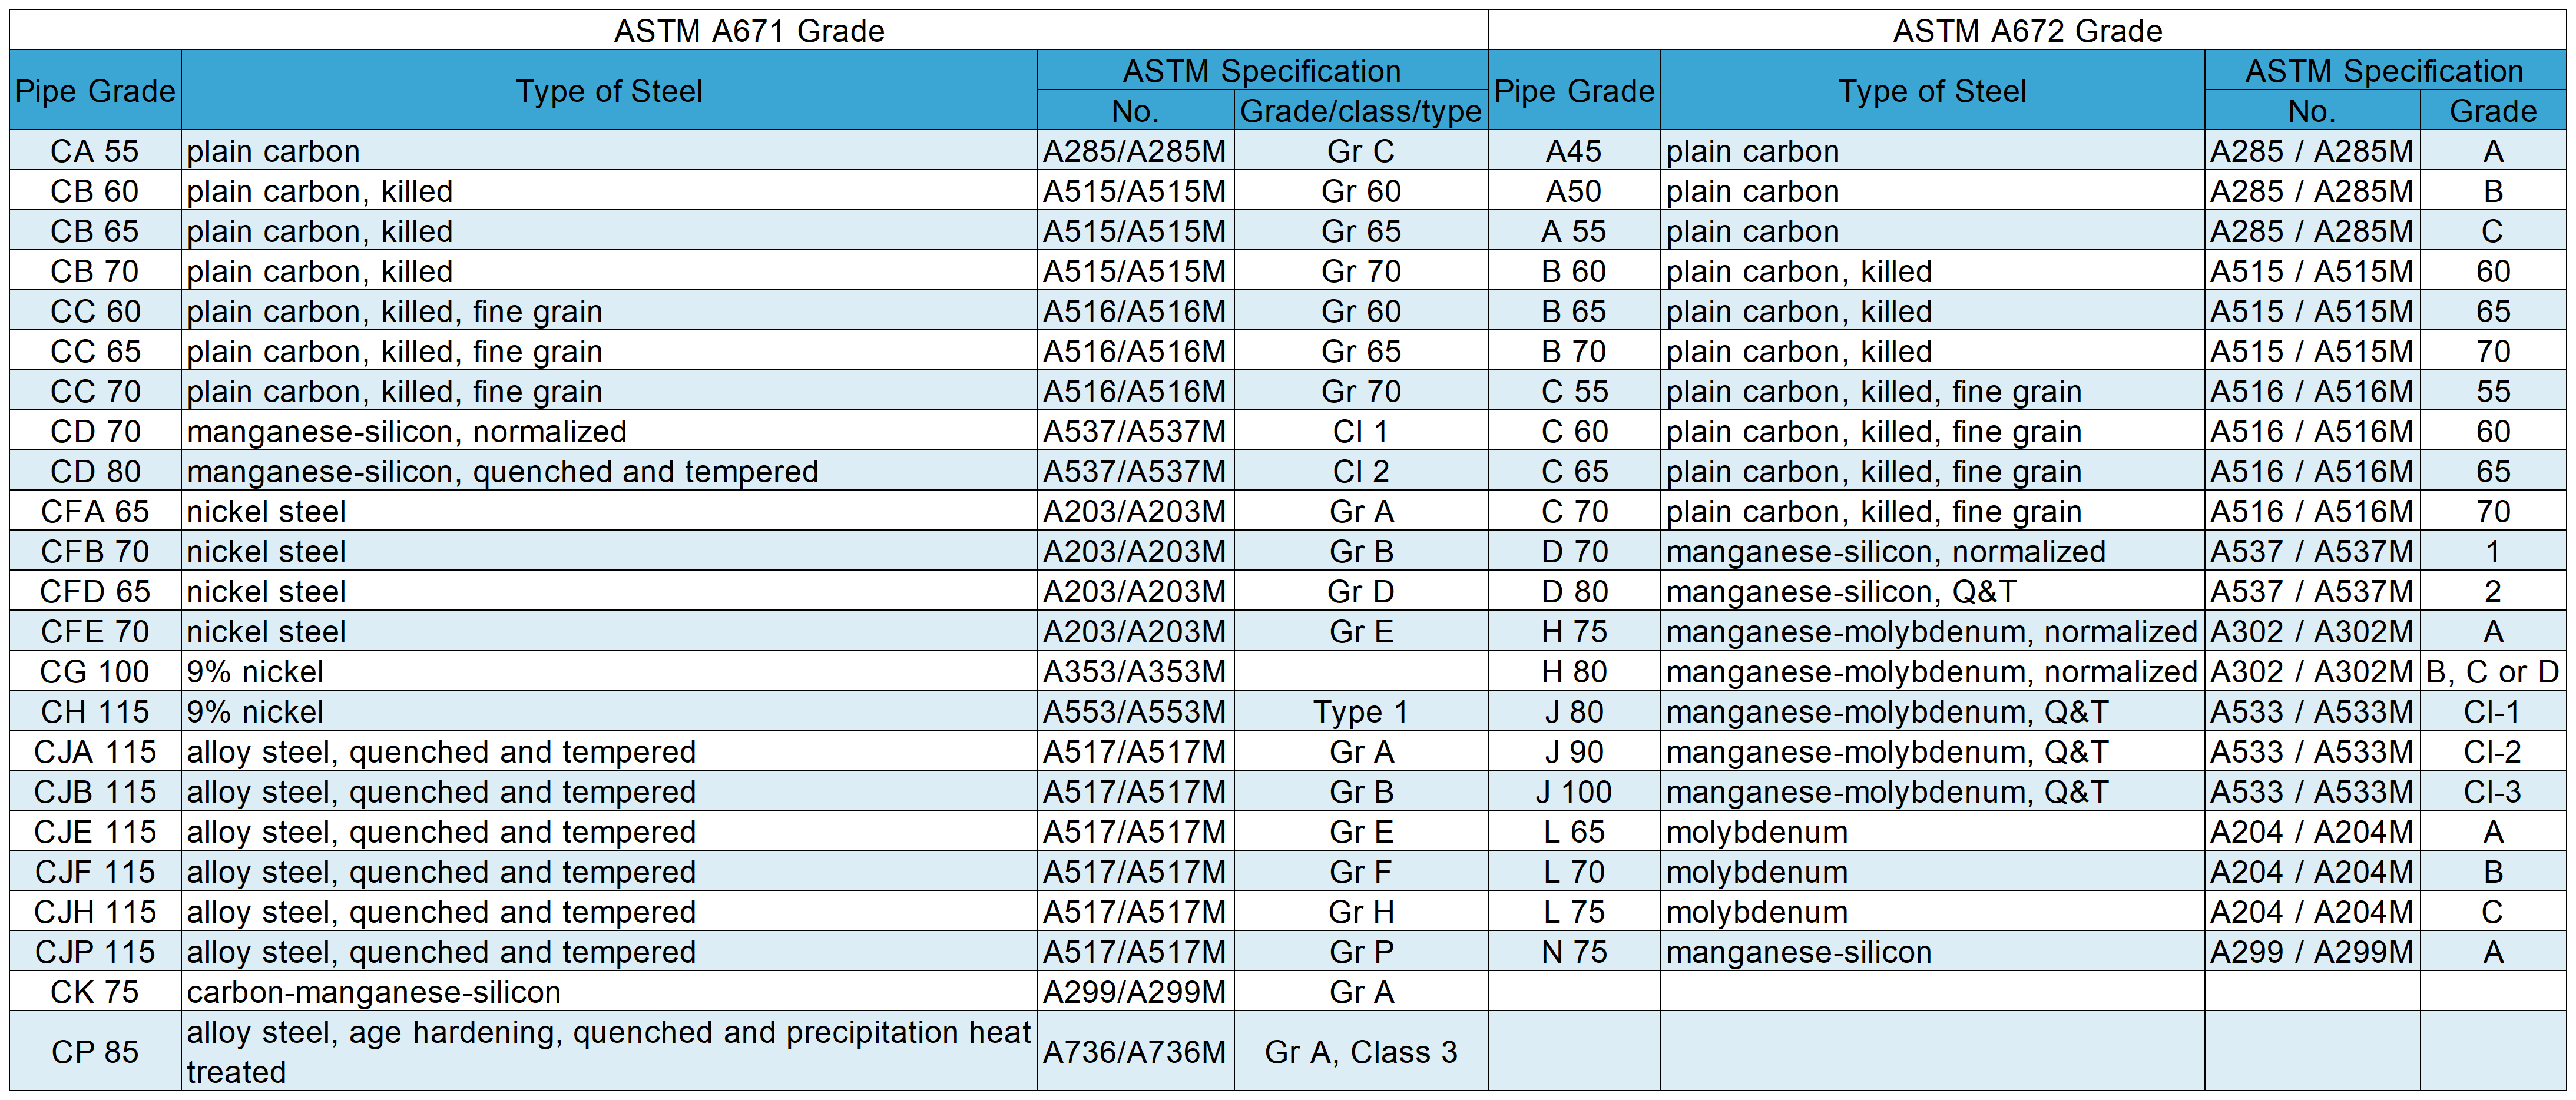 astm a671 a672 से भिन्न है: ग्रेड